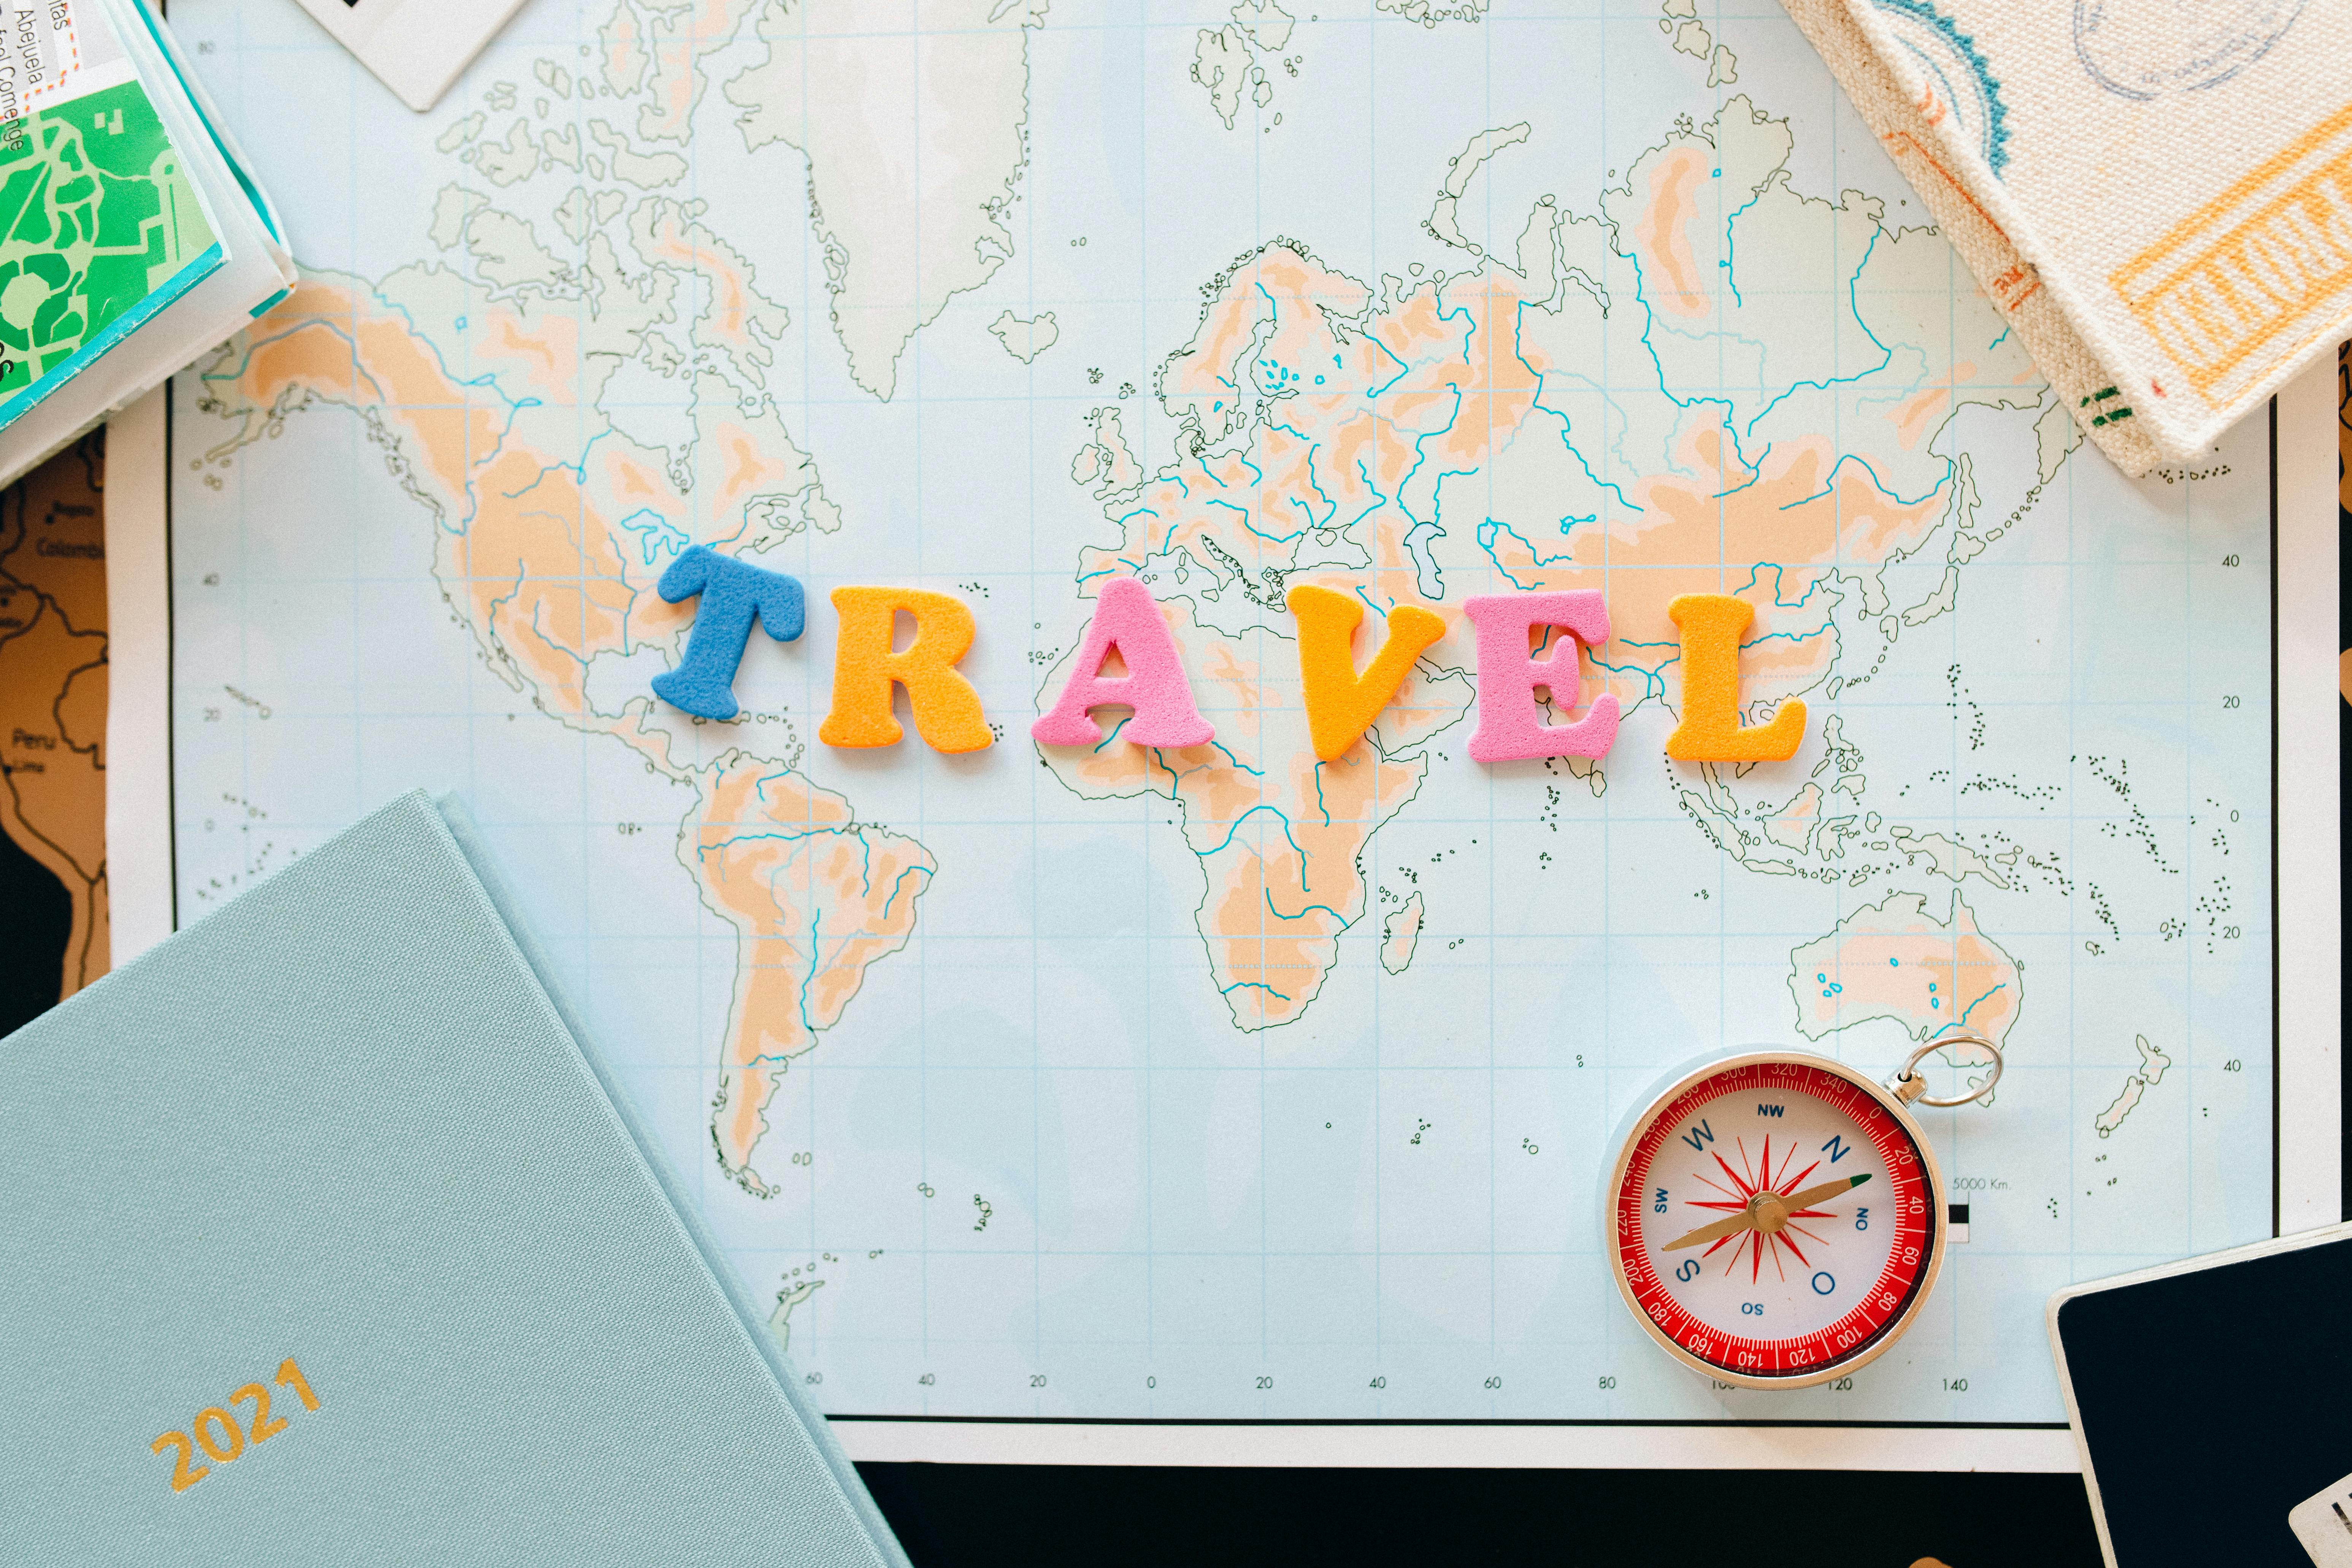 Travel plans | Source: Pexels